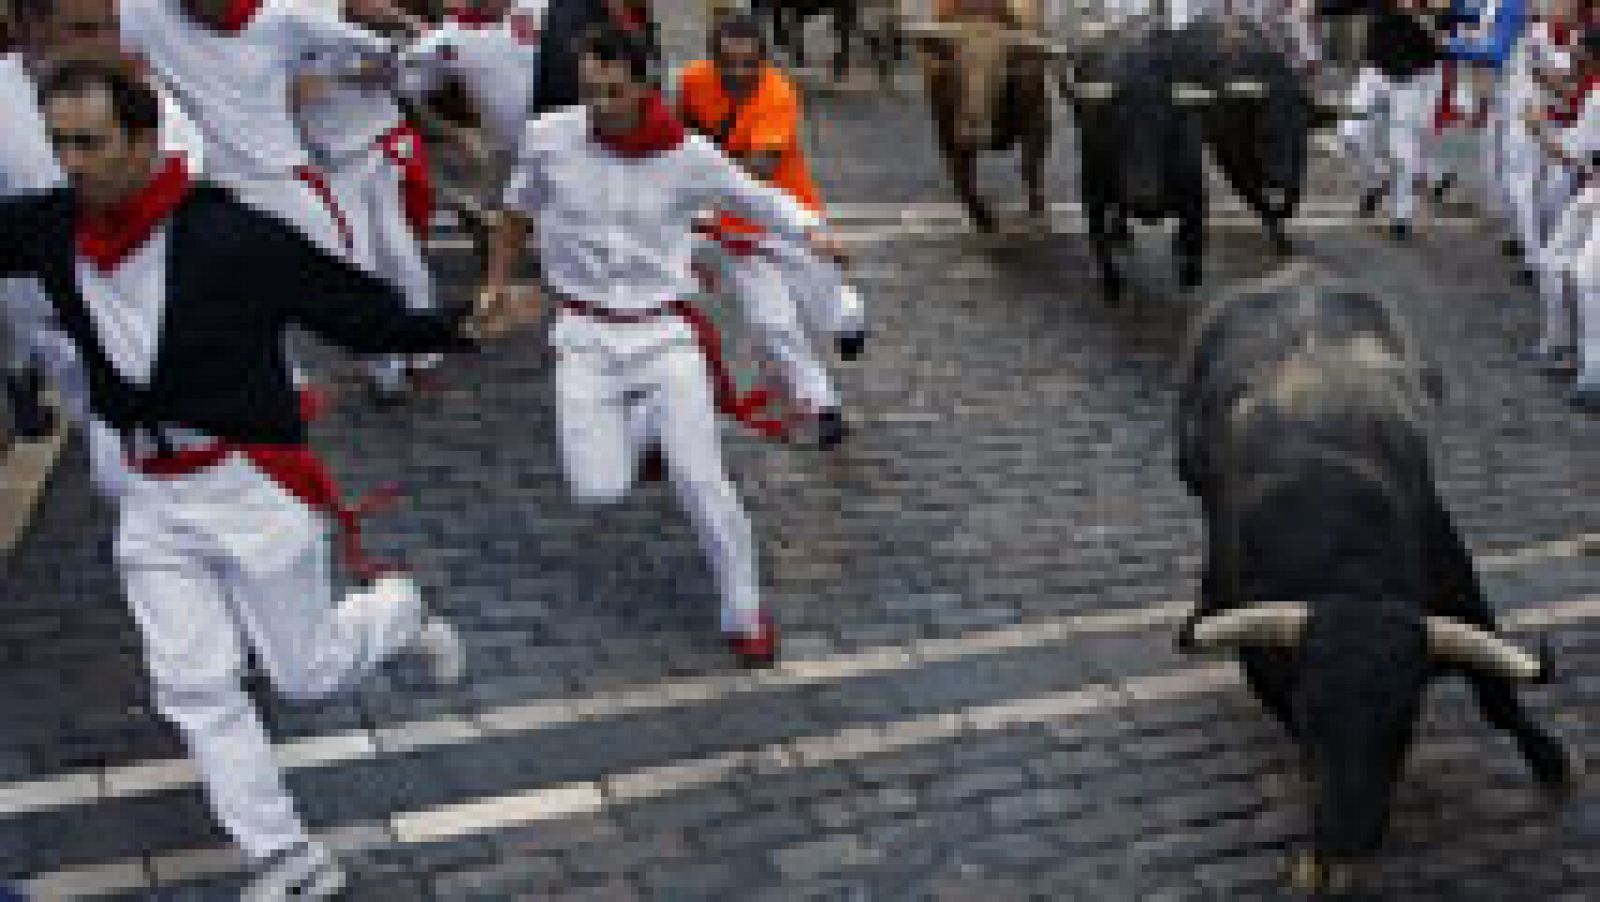 Sptimo encierro de San Fermn 2015 con toros de Garcigrande